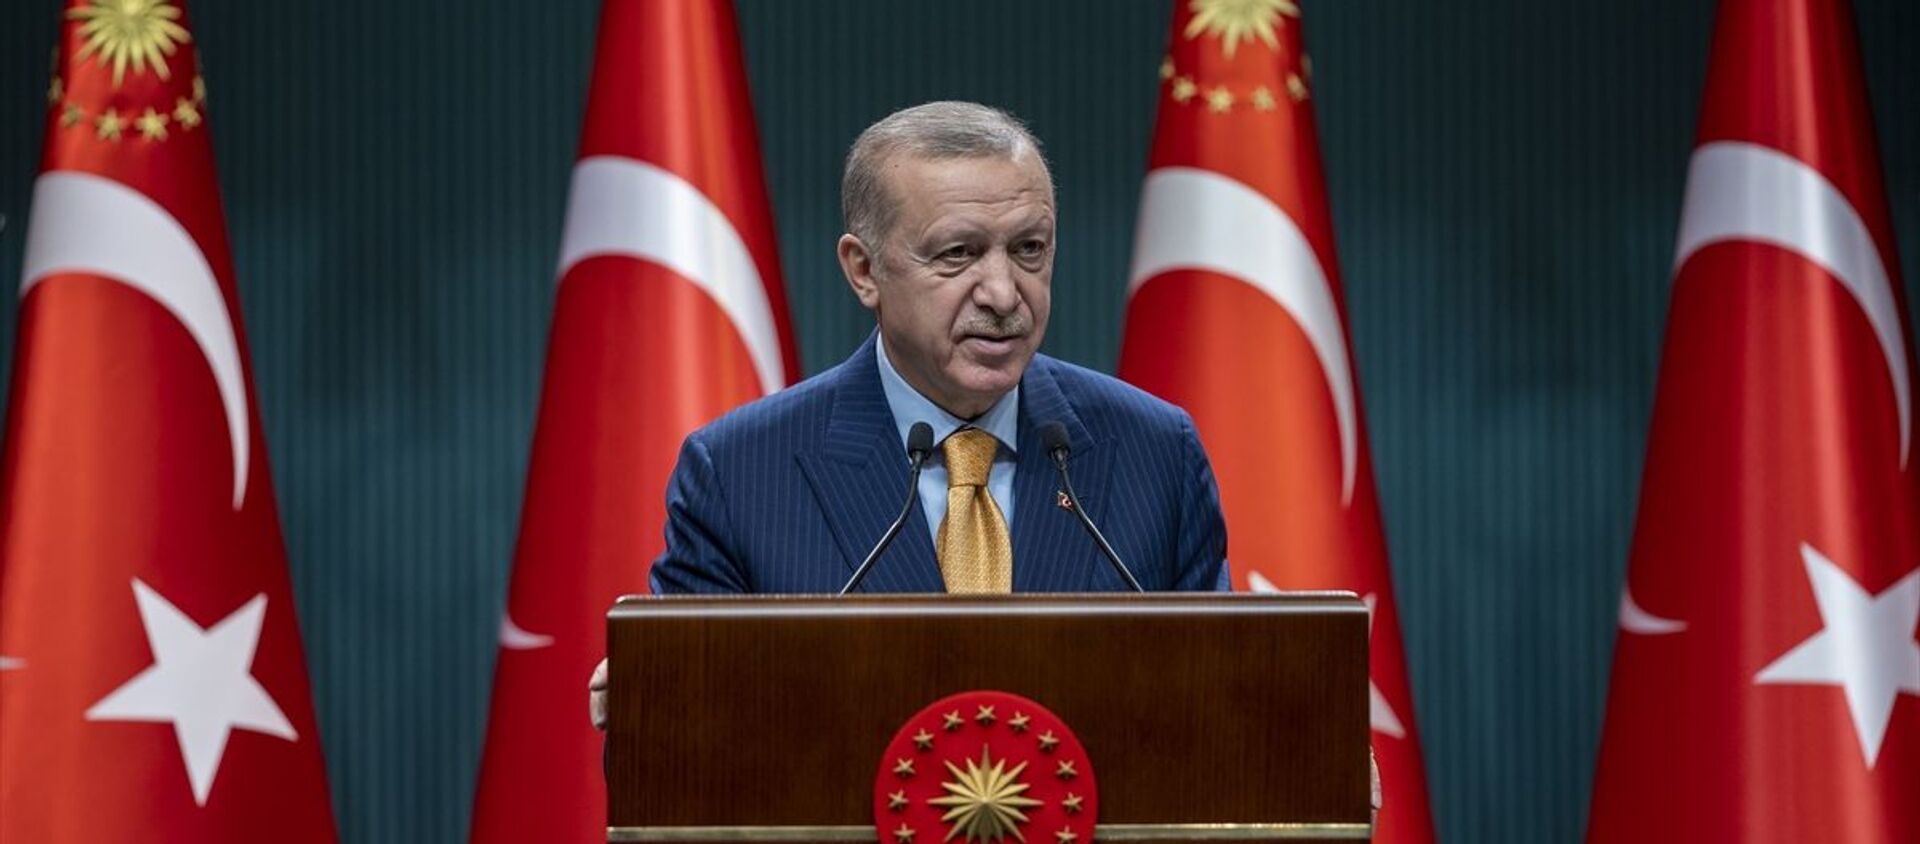 Türkiye Cumhurbaşkanı Recep Tayyip Erdoğan, Cumhurbaşkanlığı Kabine Toplantısı'nın ardından açıklamalarda bulundu. - Sputnik Türkiye, 1920, 17.02.2021